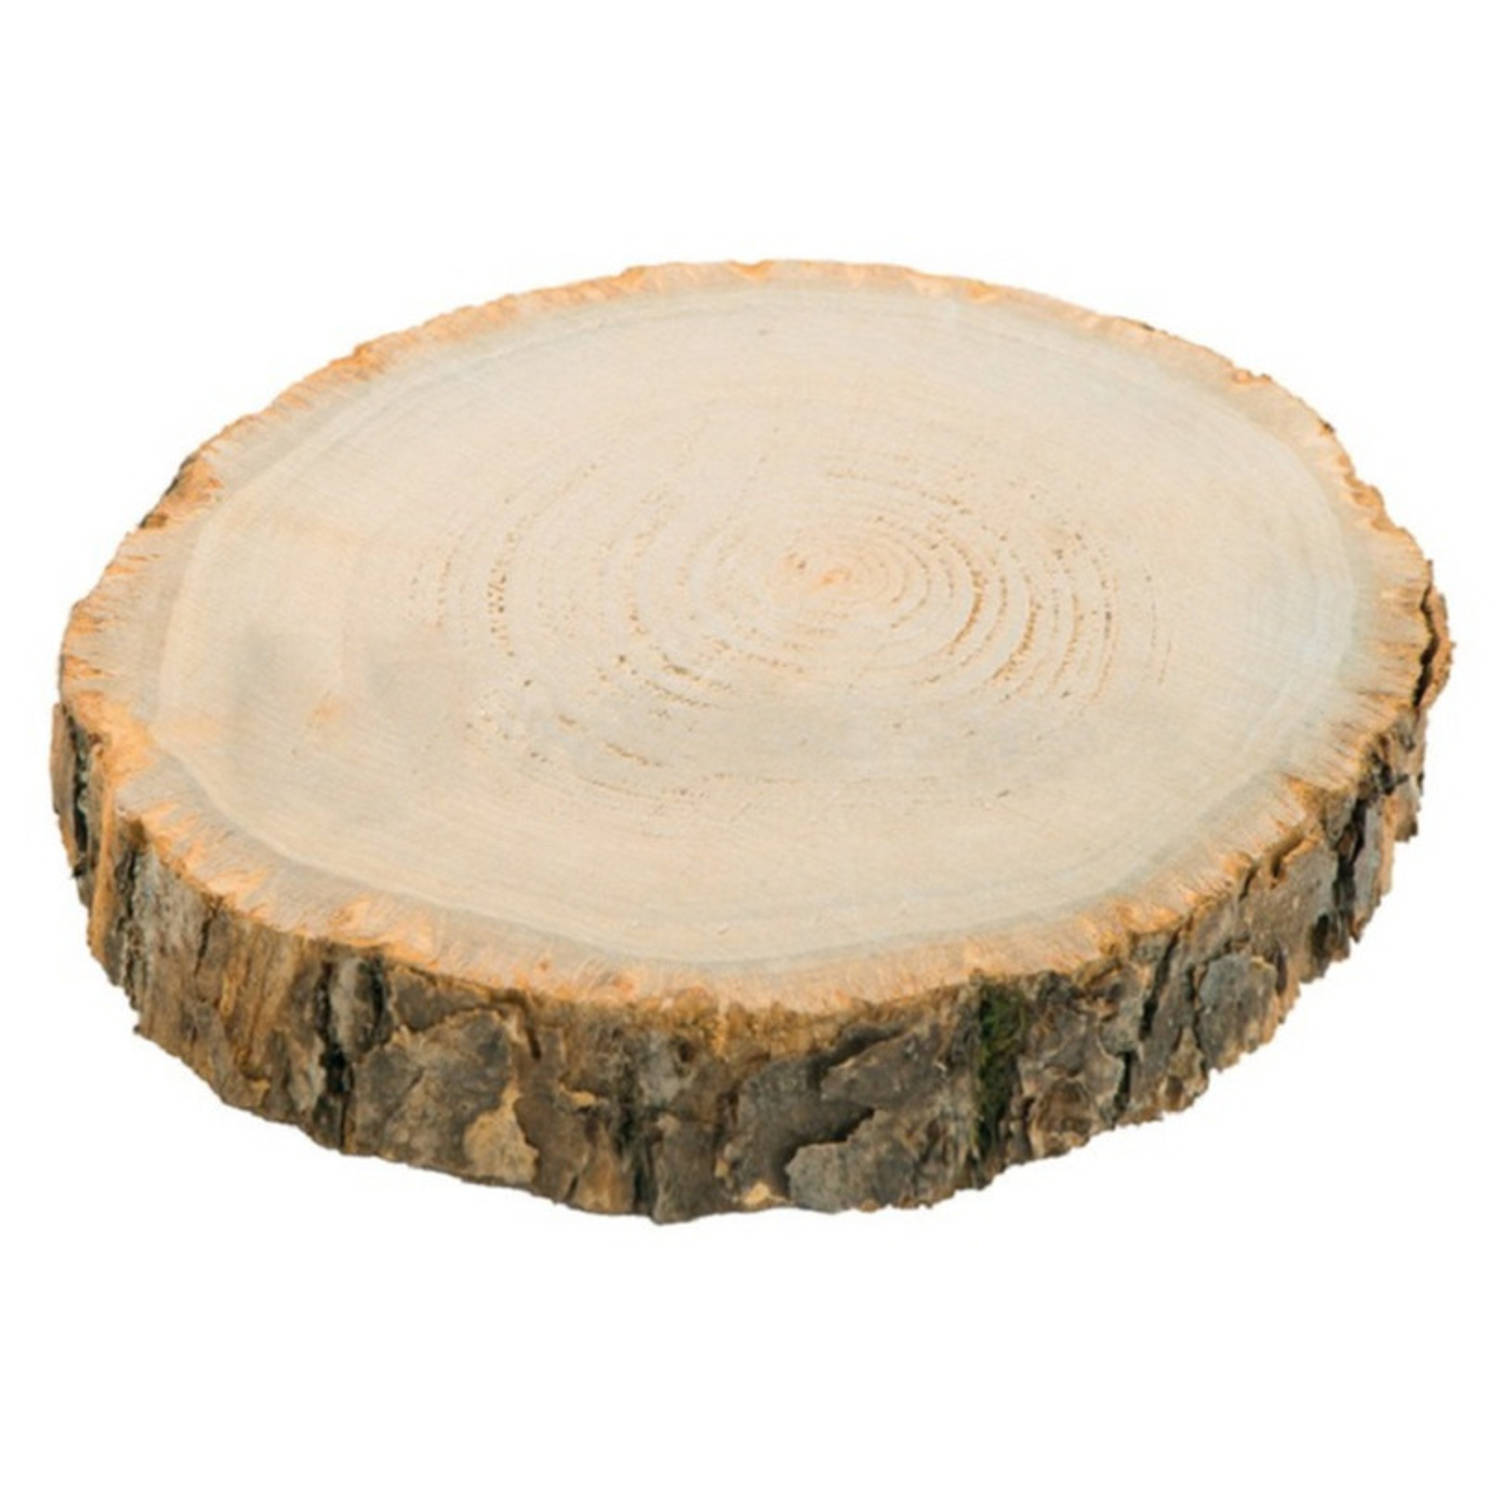 Chaks Kaarsenplateau boomschijf met schors hout D26 x H4 cm rond Kaarsenplateaus